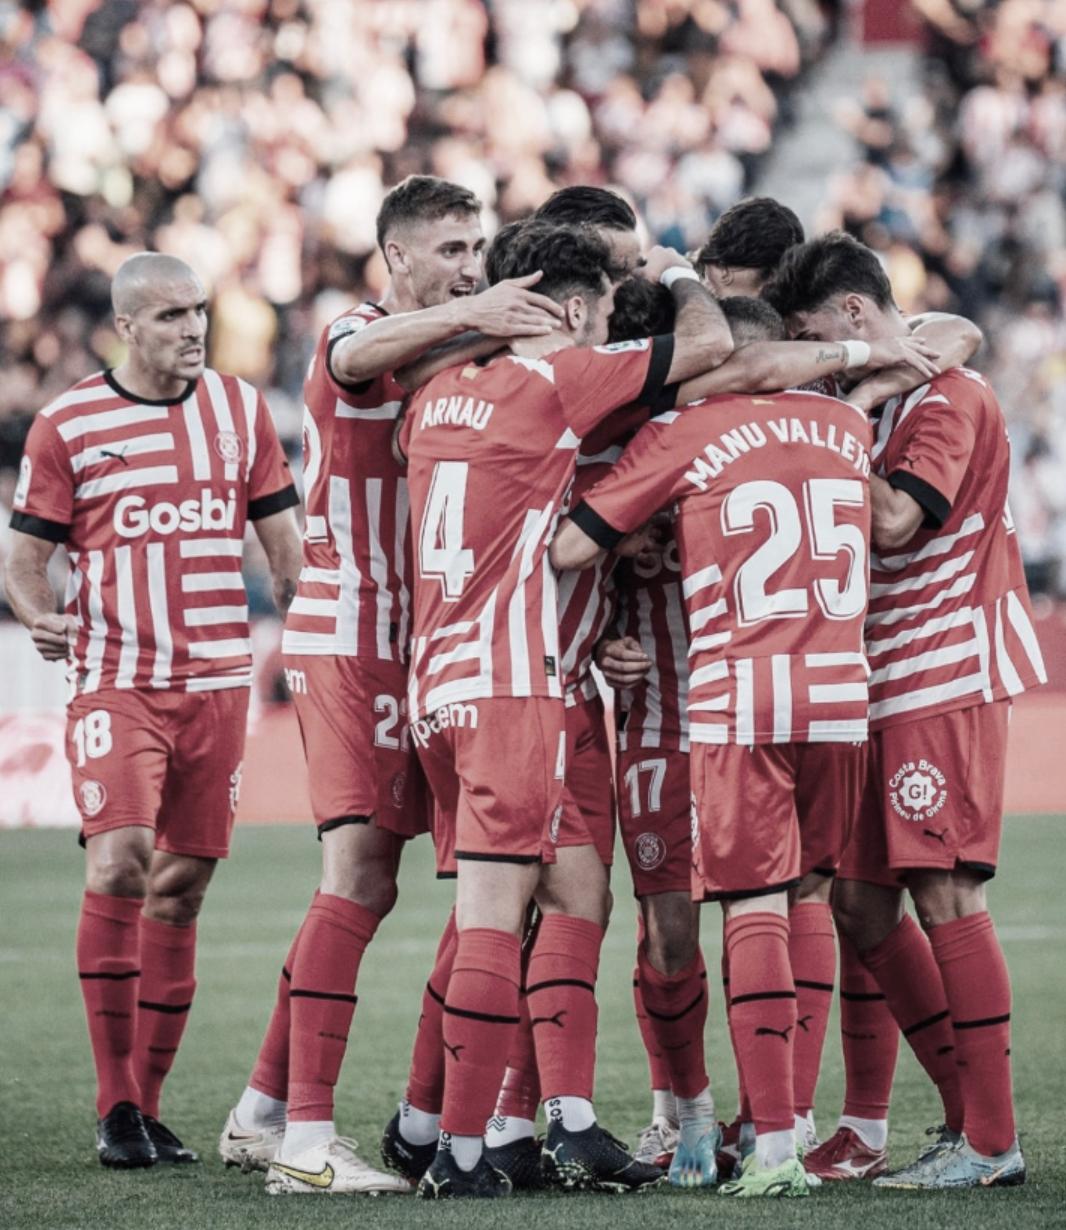 Análisis del rival: Girona, un equipo con más fútbol que puntos